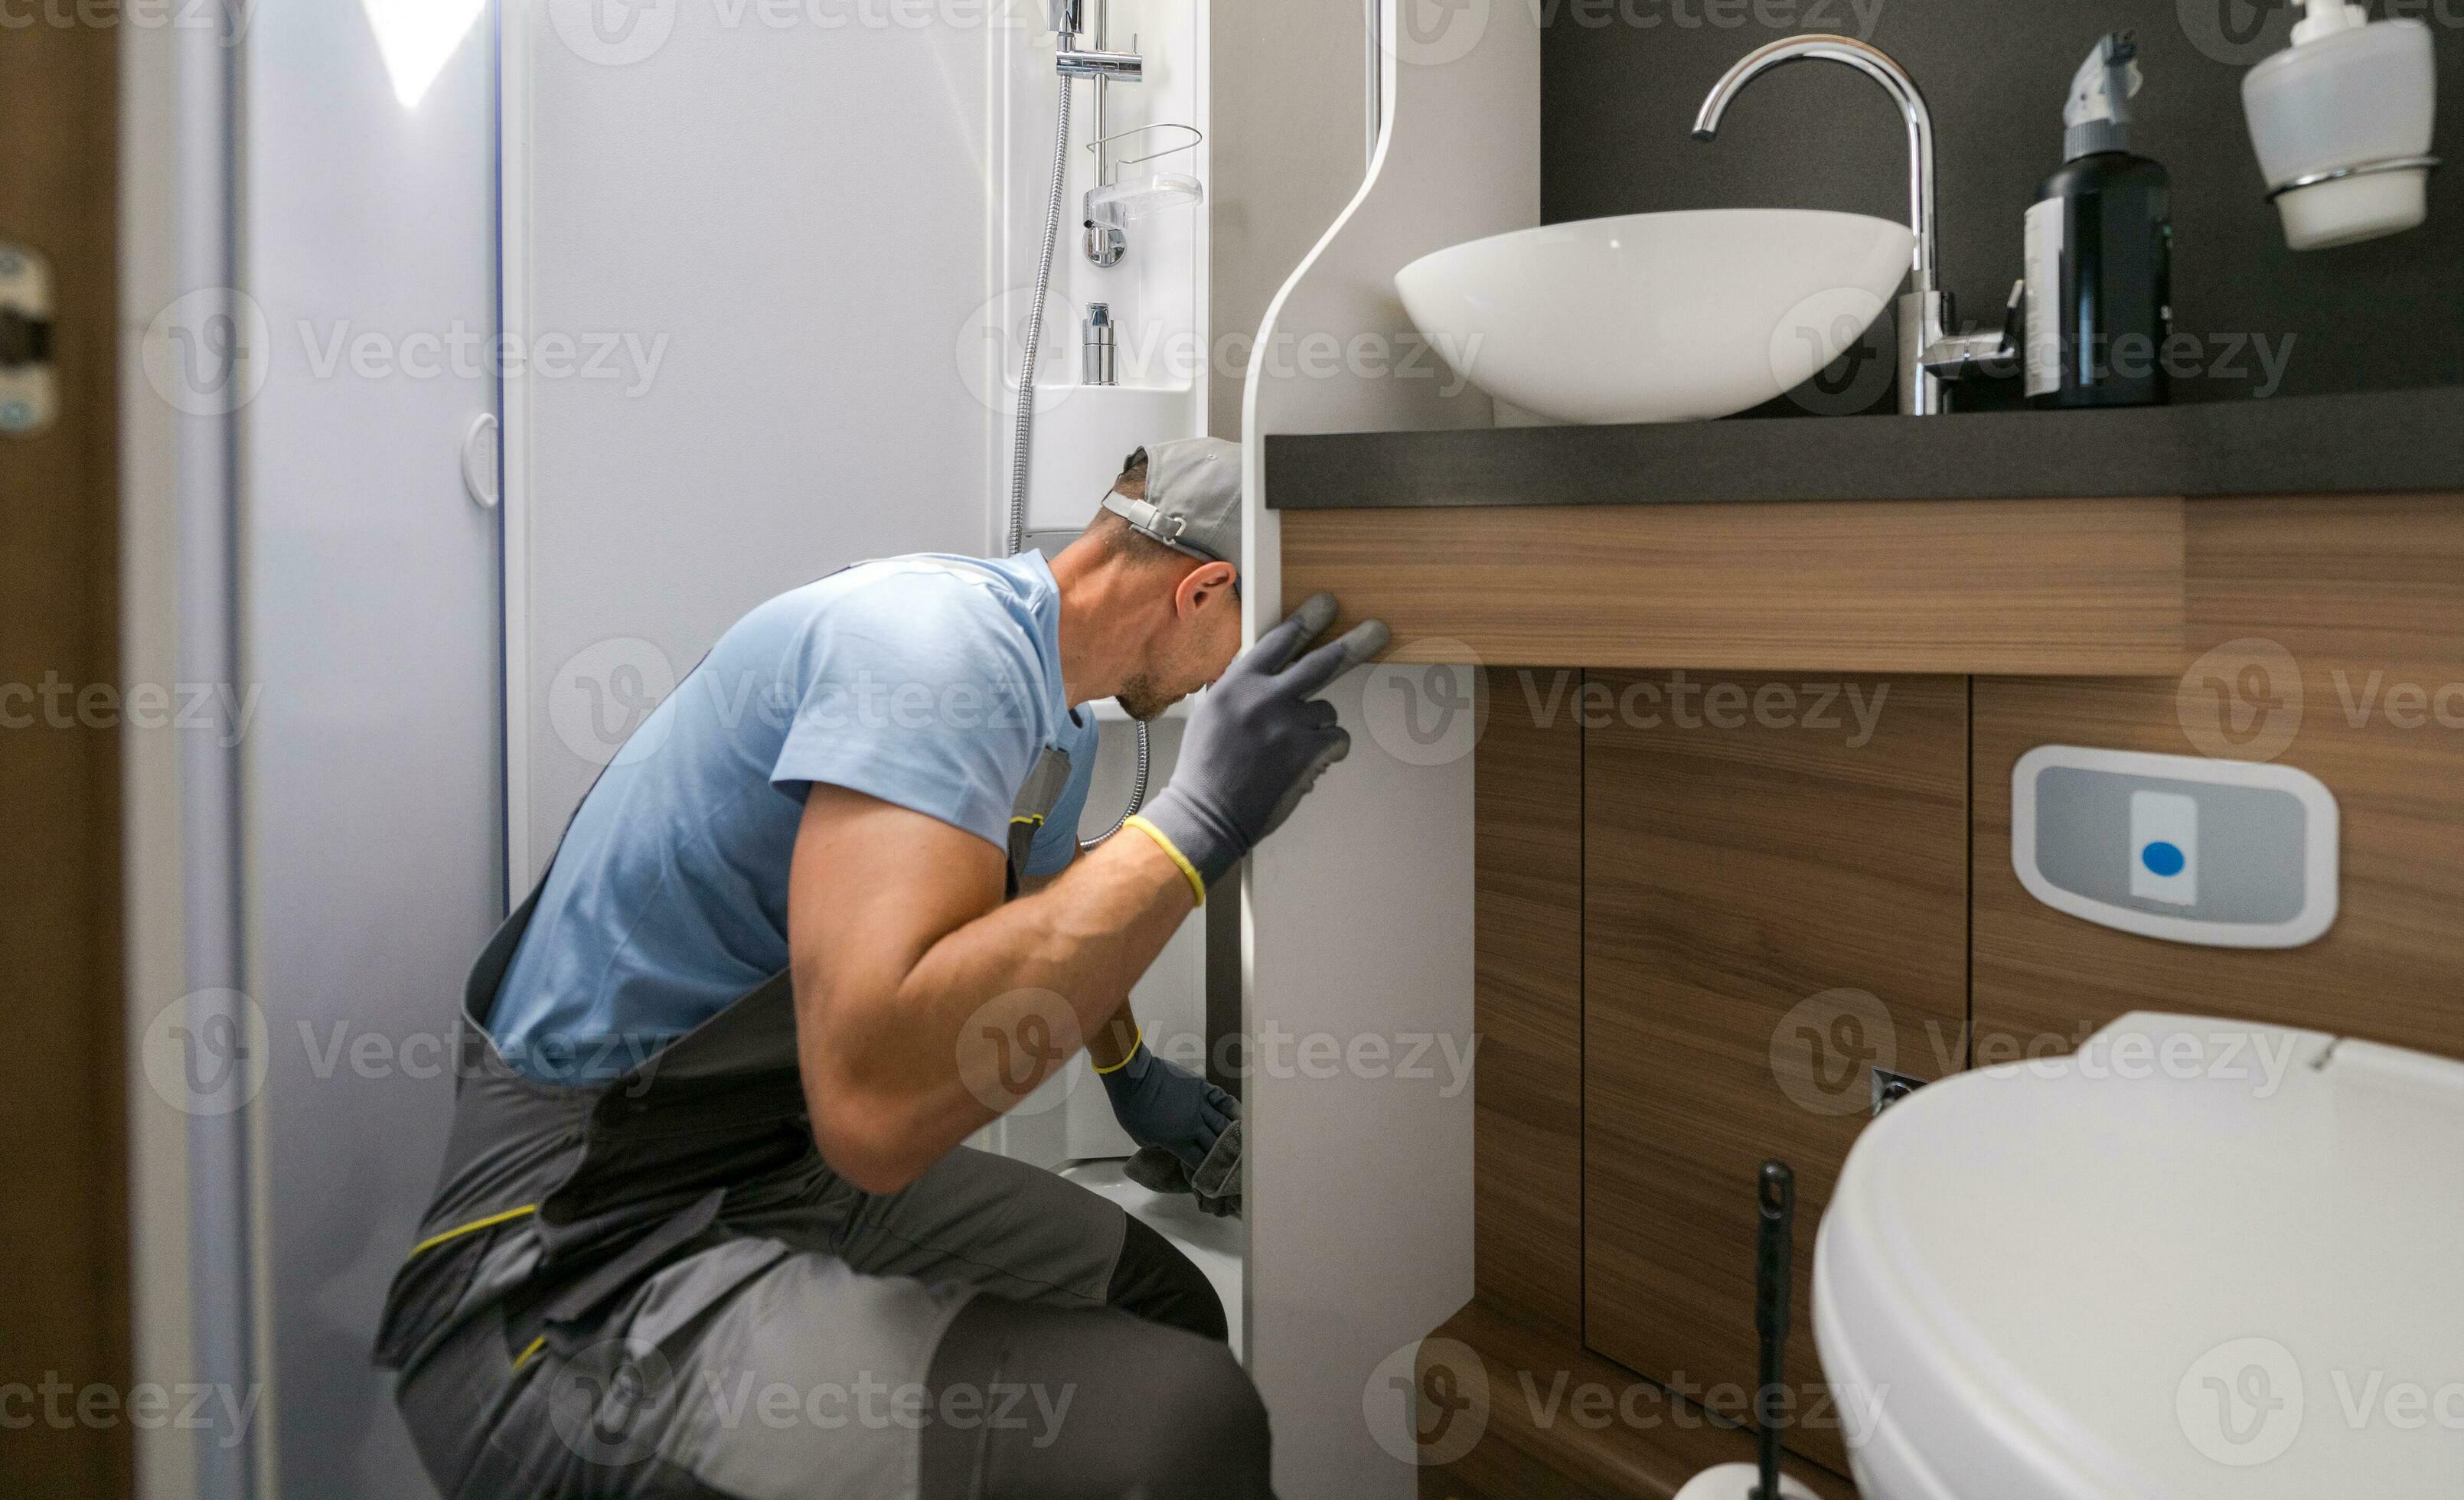 rv Vermietung Arbeiter Reinigung Dusche Kabine Innerhalb ein Wohnmobil van  Wohnmobil 24629056 Stock-Photo bei Vecteezy